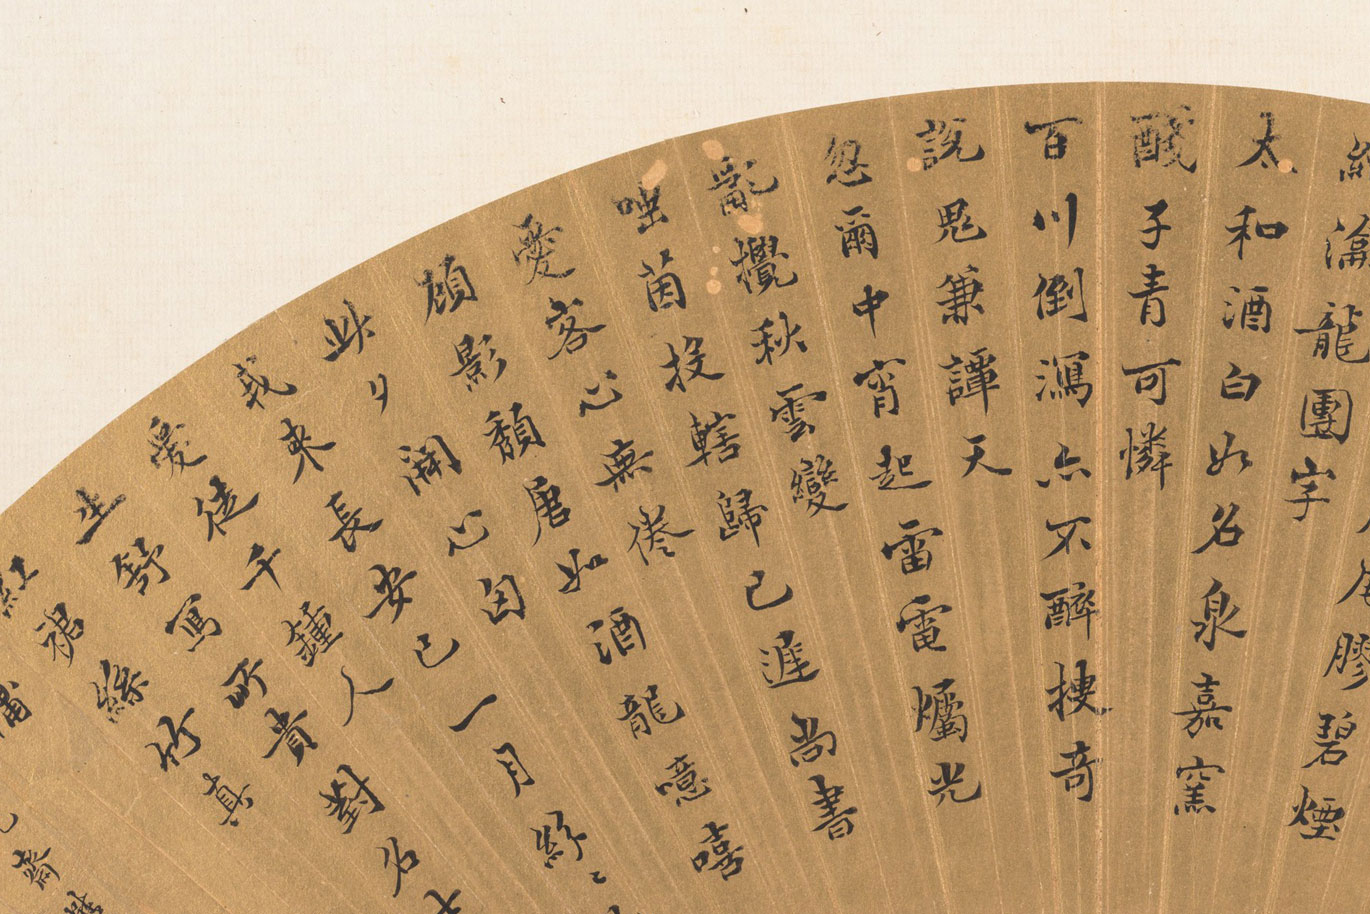 Calligraphy on folding fan by Wang Maolin